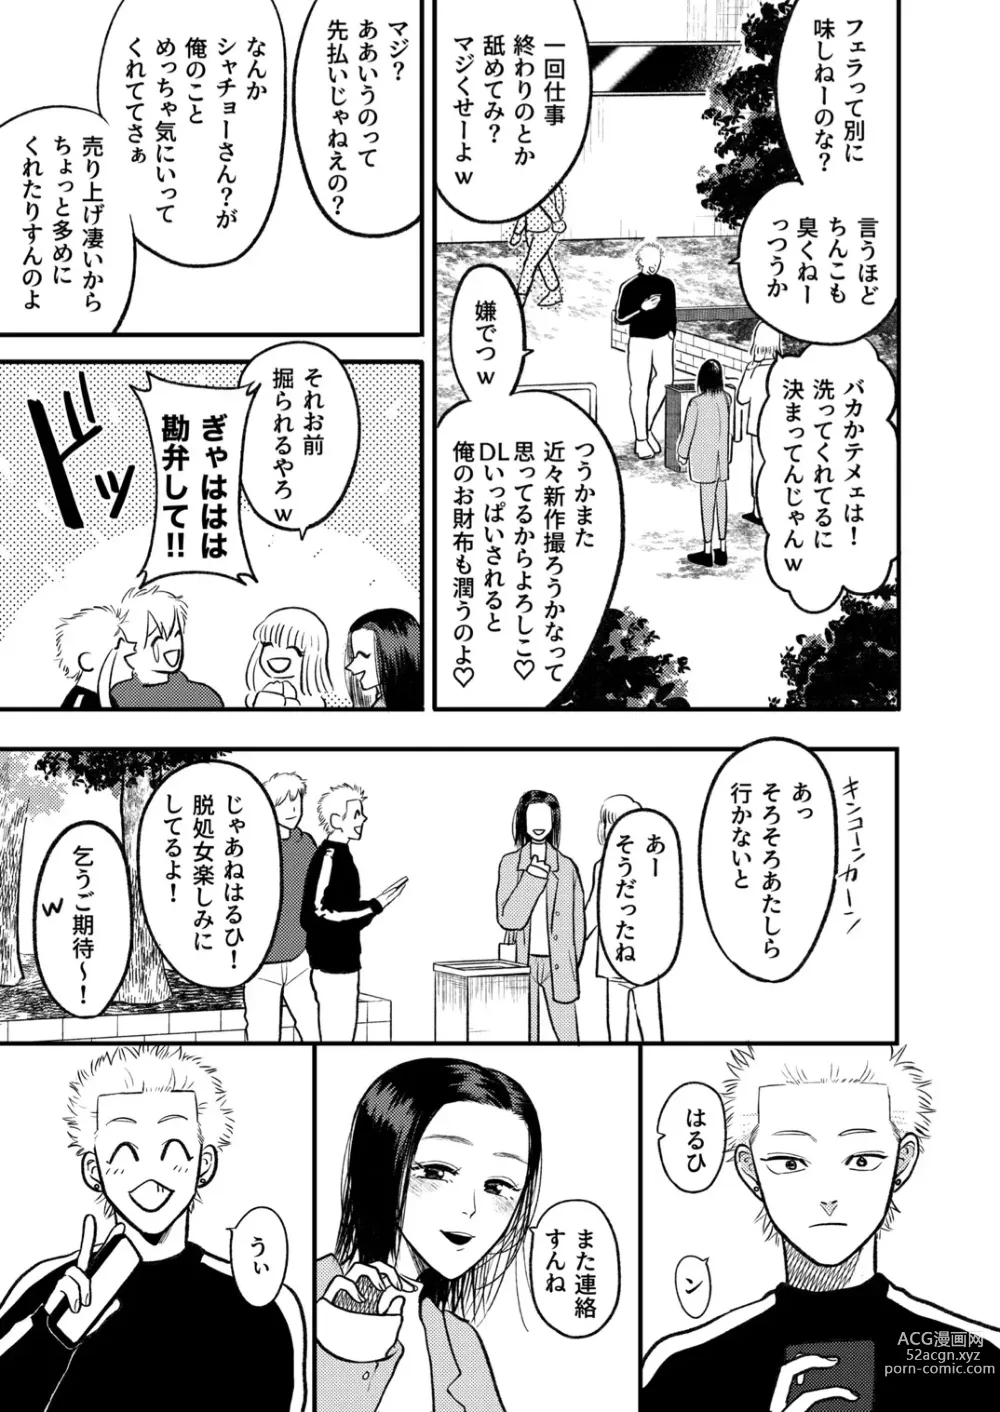 Page 6 of doujinshi Kashikoi Okane no Kasegikata